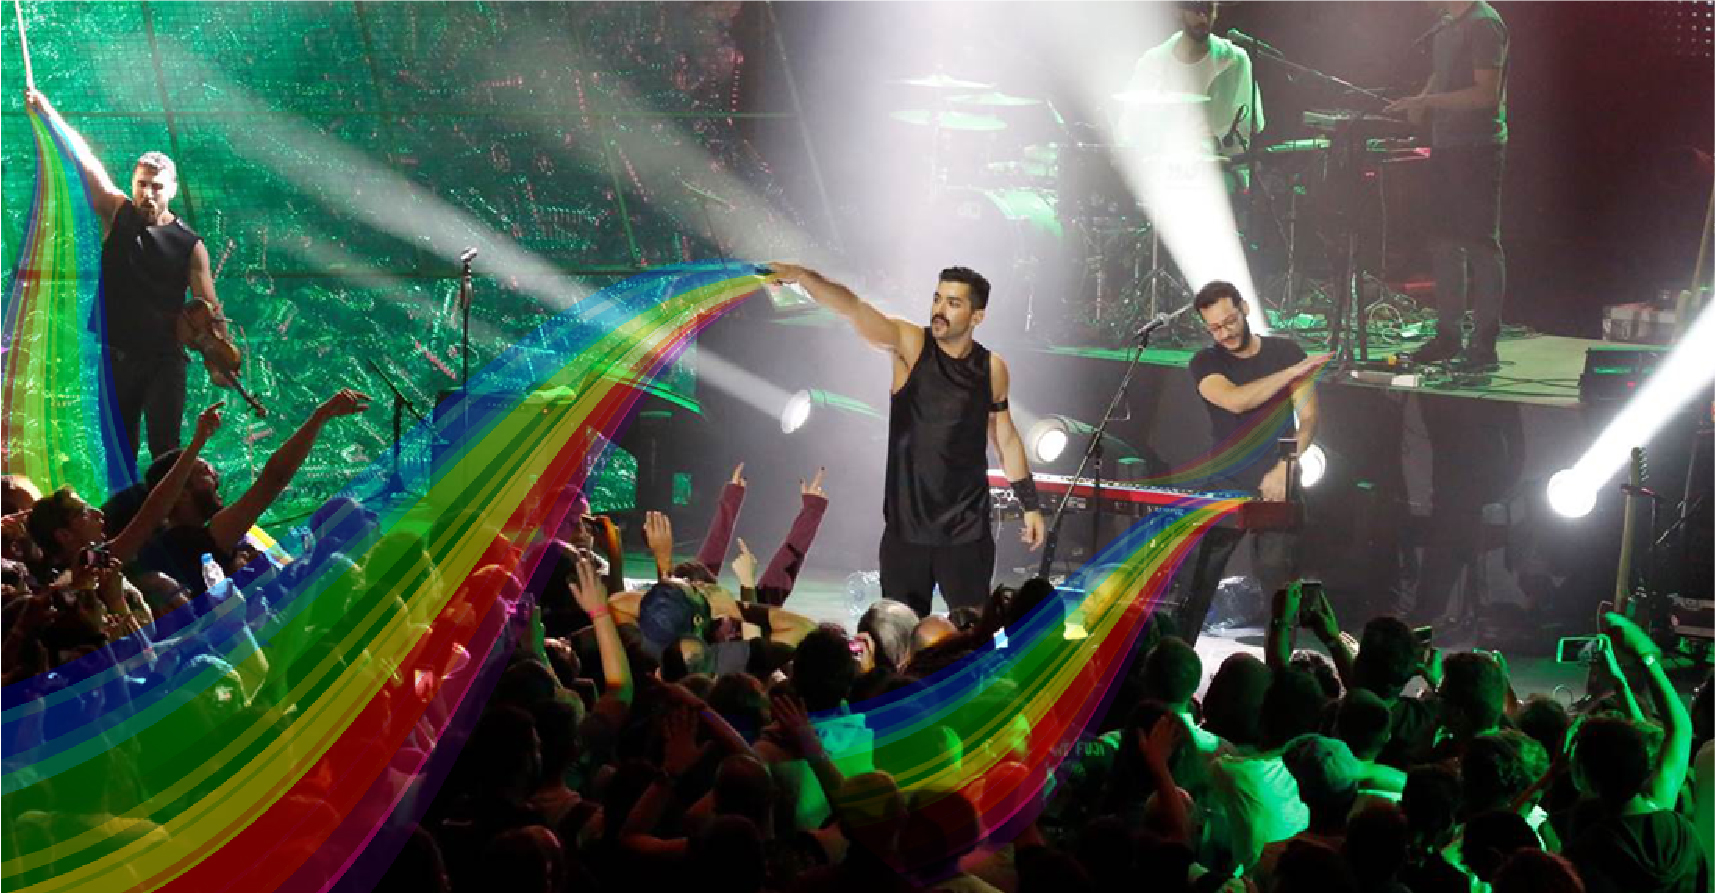 صورة الحكومة المصرية تحظر فرقة مشروع ليلى لتحويلها ٧ مواطنين إلى مثليين عن طريق الغناء عليهم